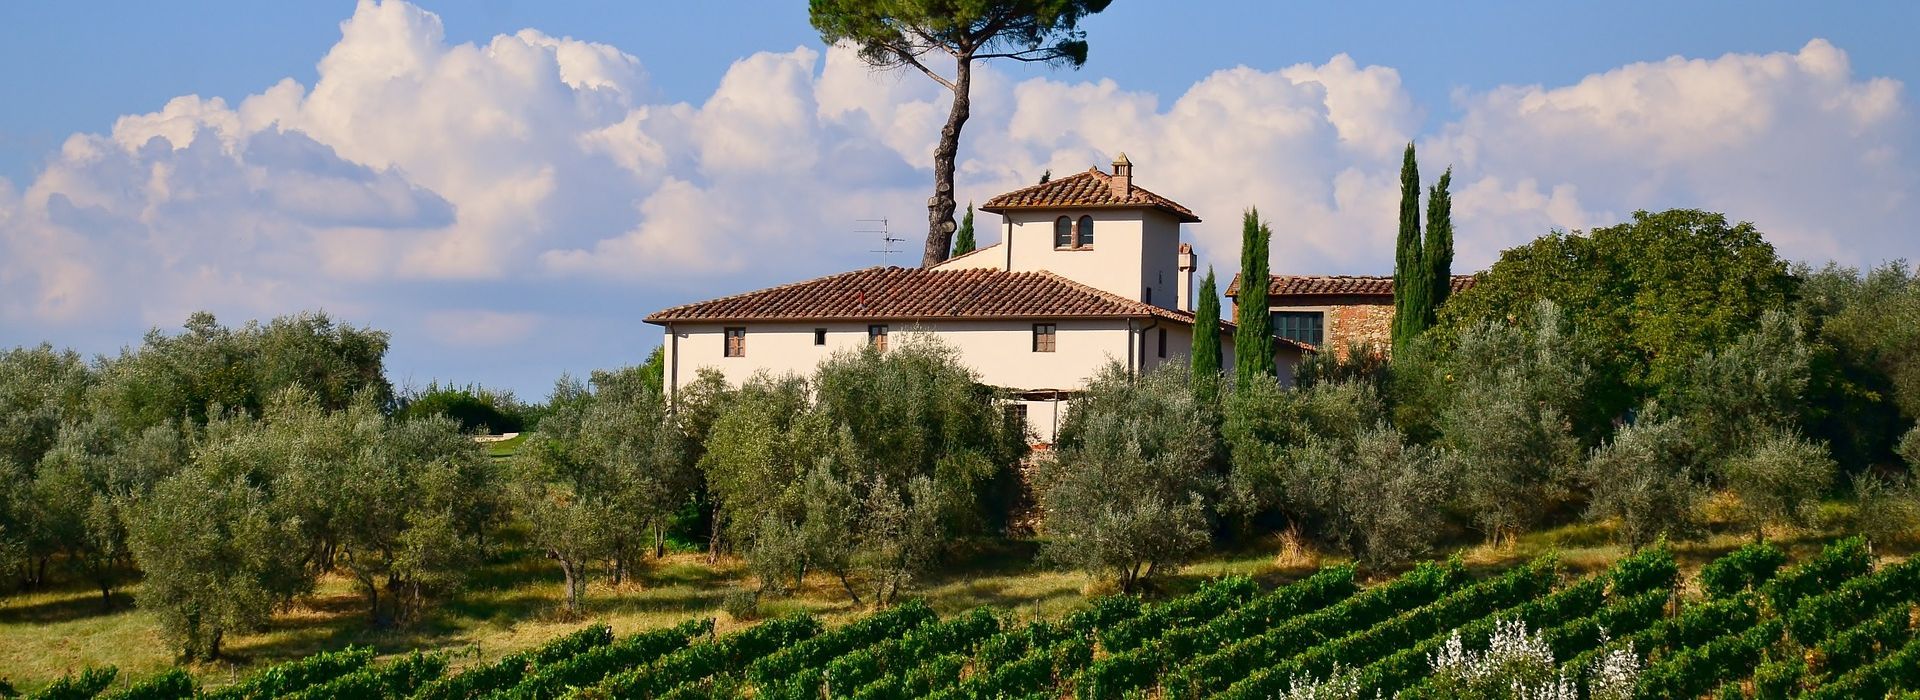 Italy-tuscany-villa-pixabay-marissa todd-851197_1920.jpg